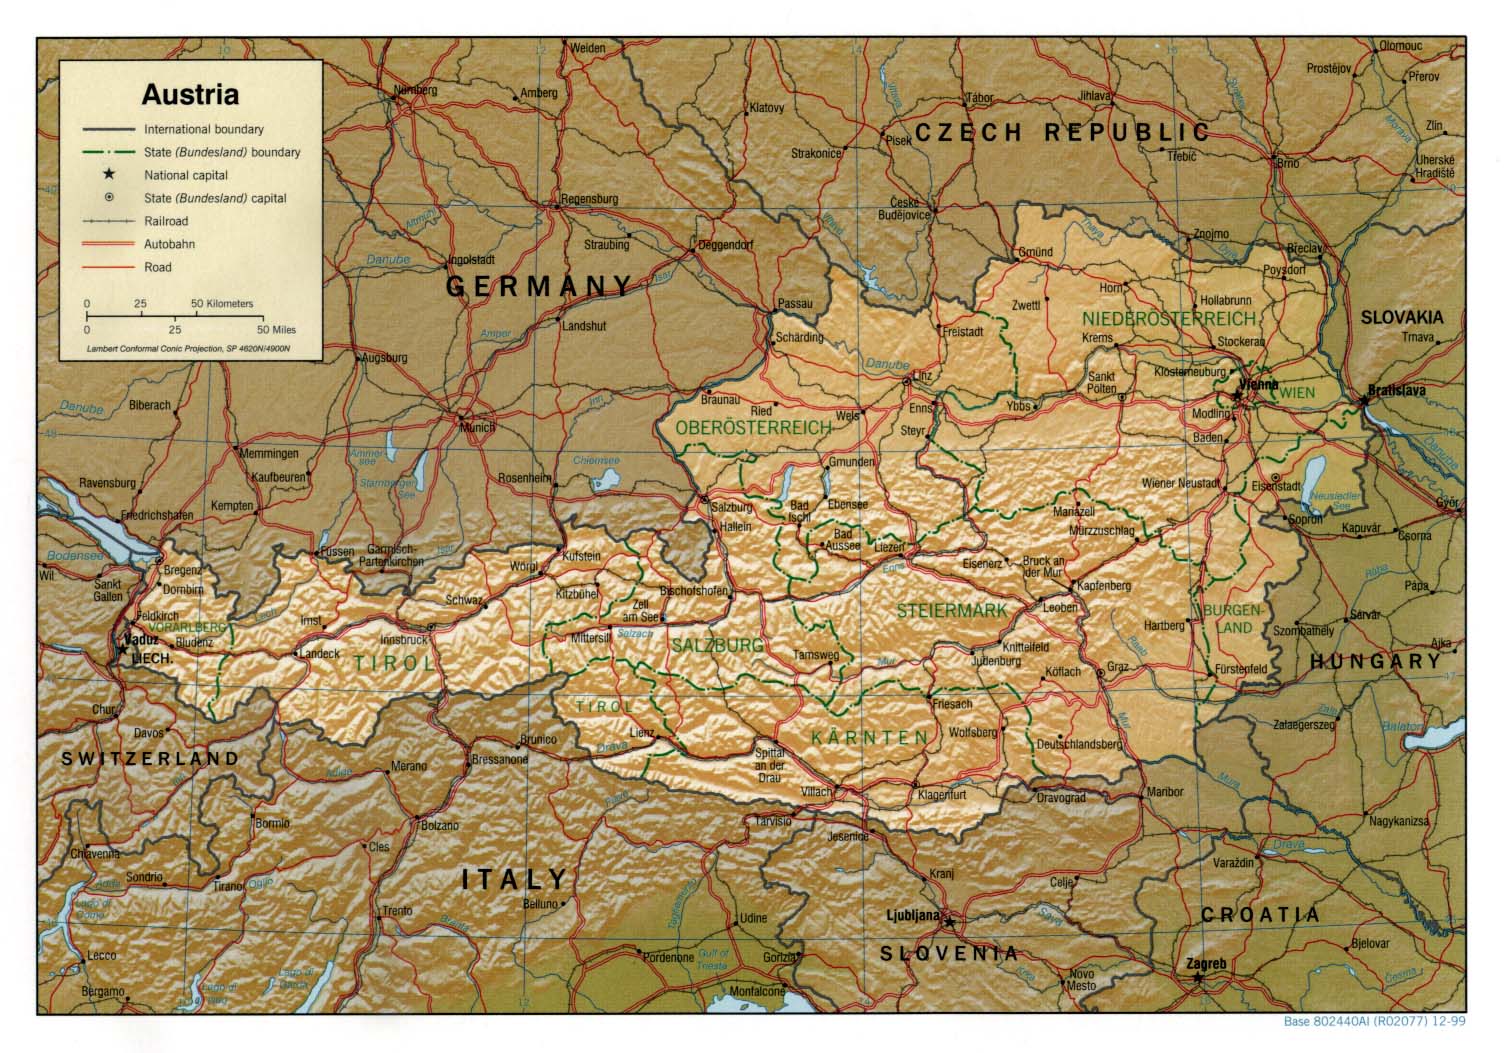 ausztria térkép tartományokkal Ausztria térkép lap   Megbízható válaszok profiktól ausztria térkép tartományokkal